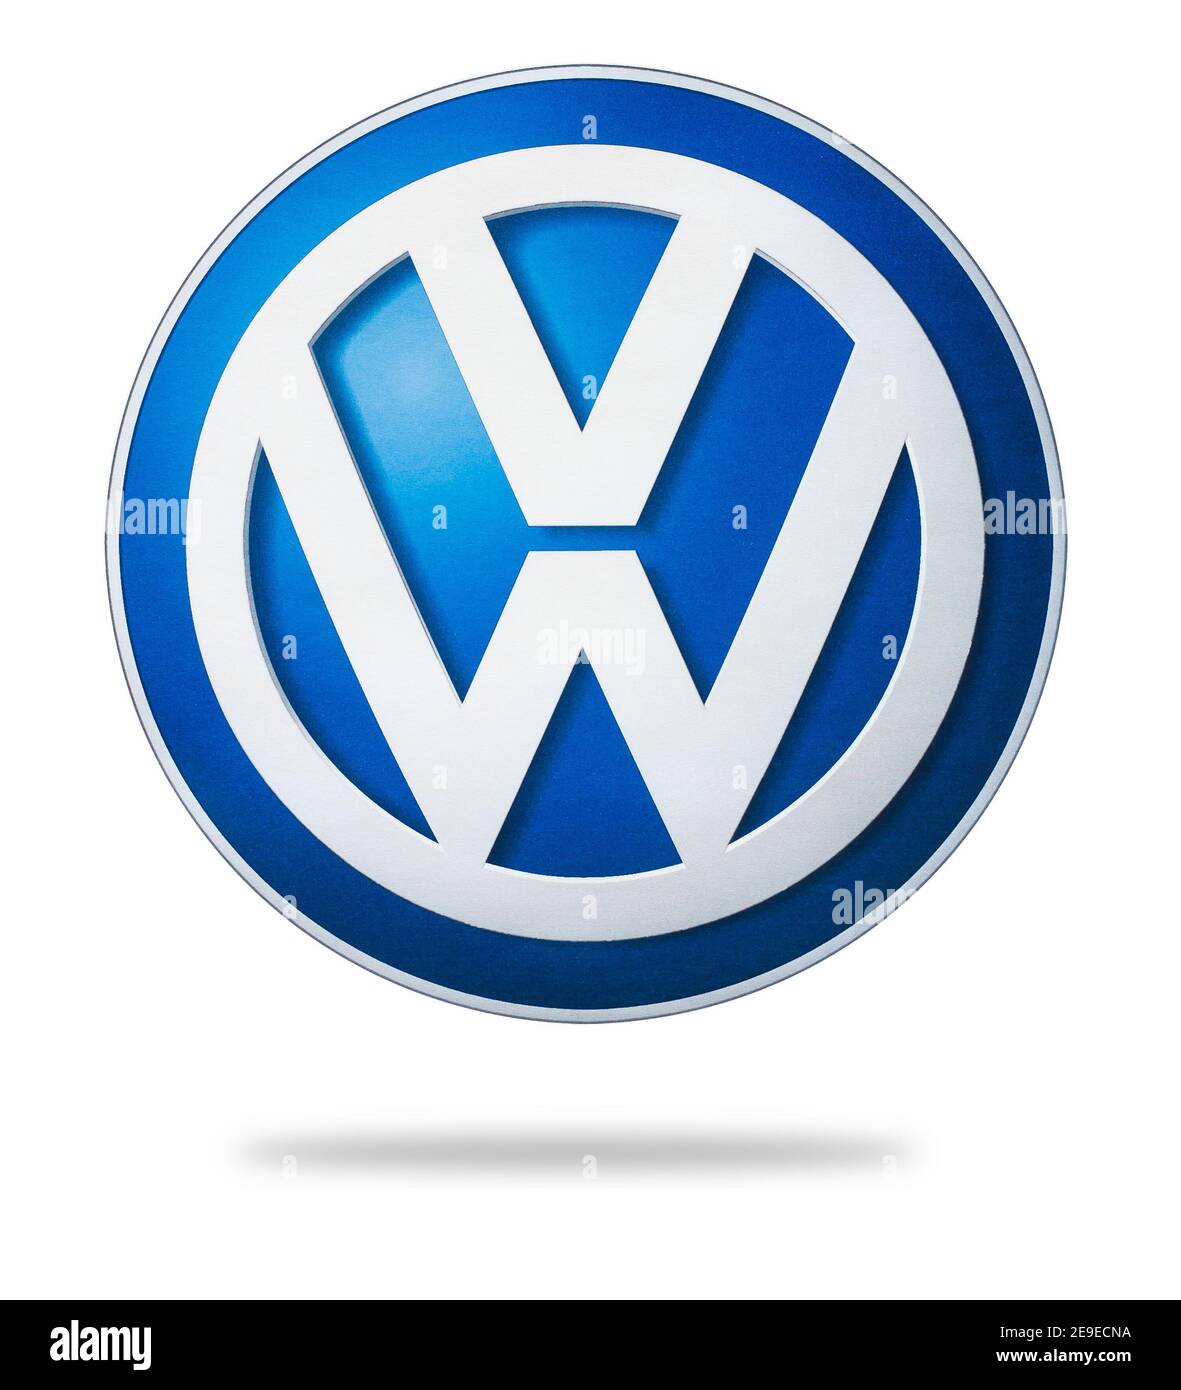 Foto del logotipo de Volkswagen impresa en papel. Volkswagen es un fabricante de automóviles alemán con sede en Wolfsburg Foto de stock